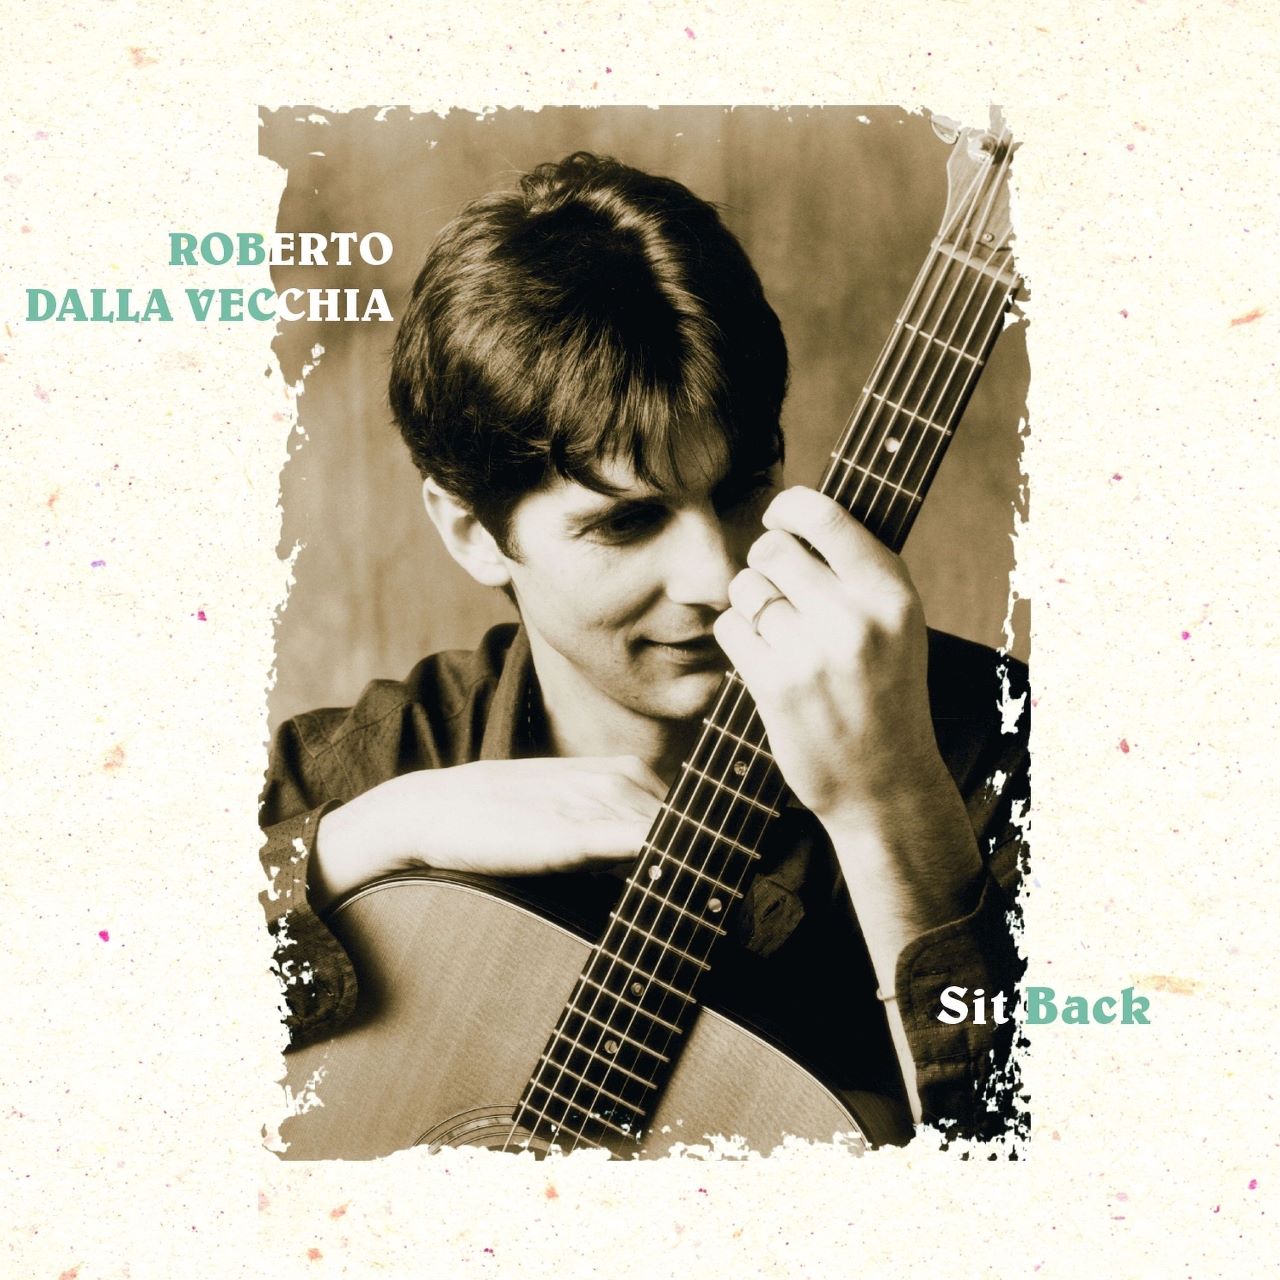 Roberto Dalla Vecchia – Sit Back cover album